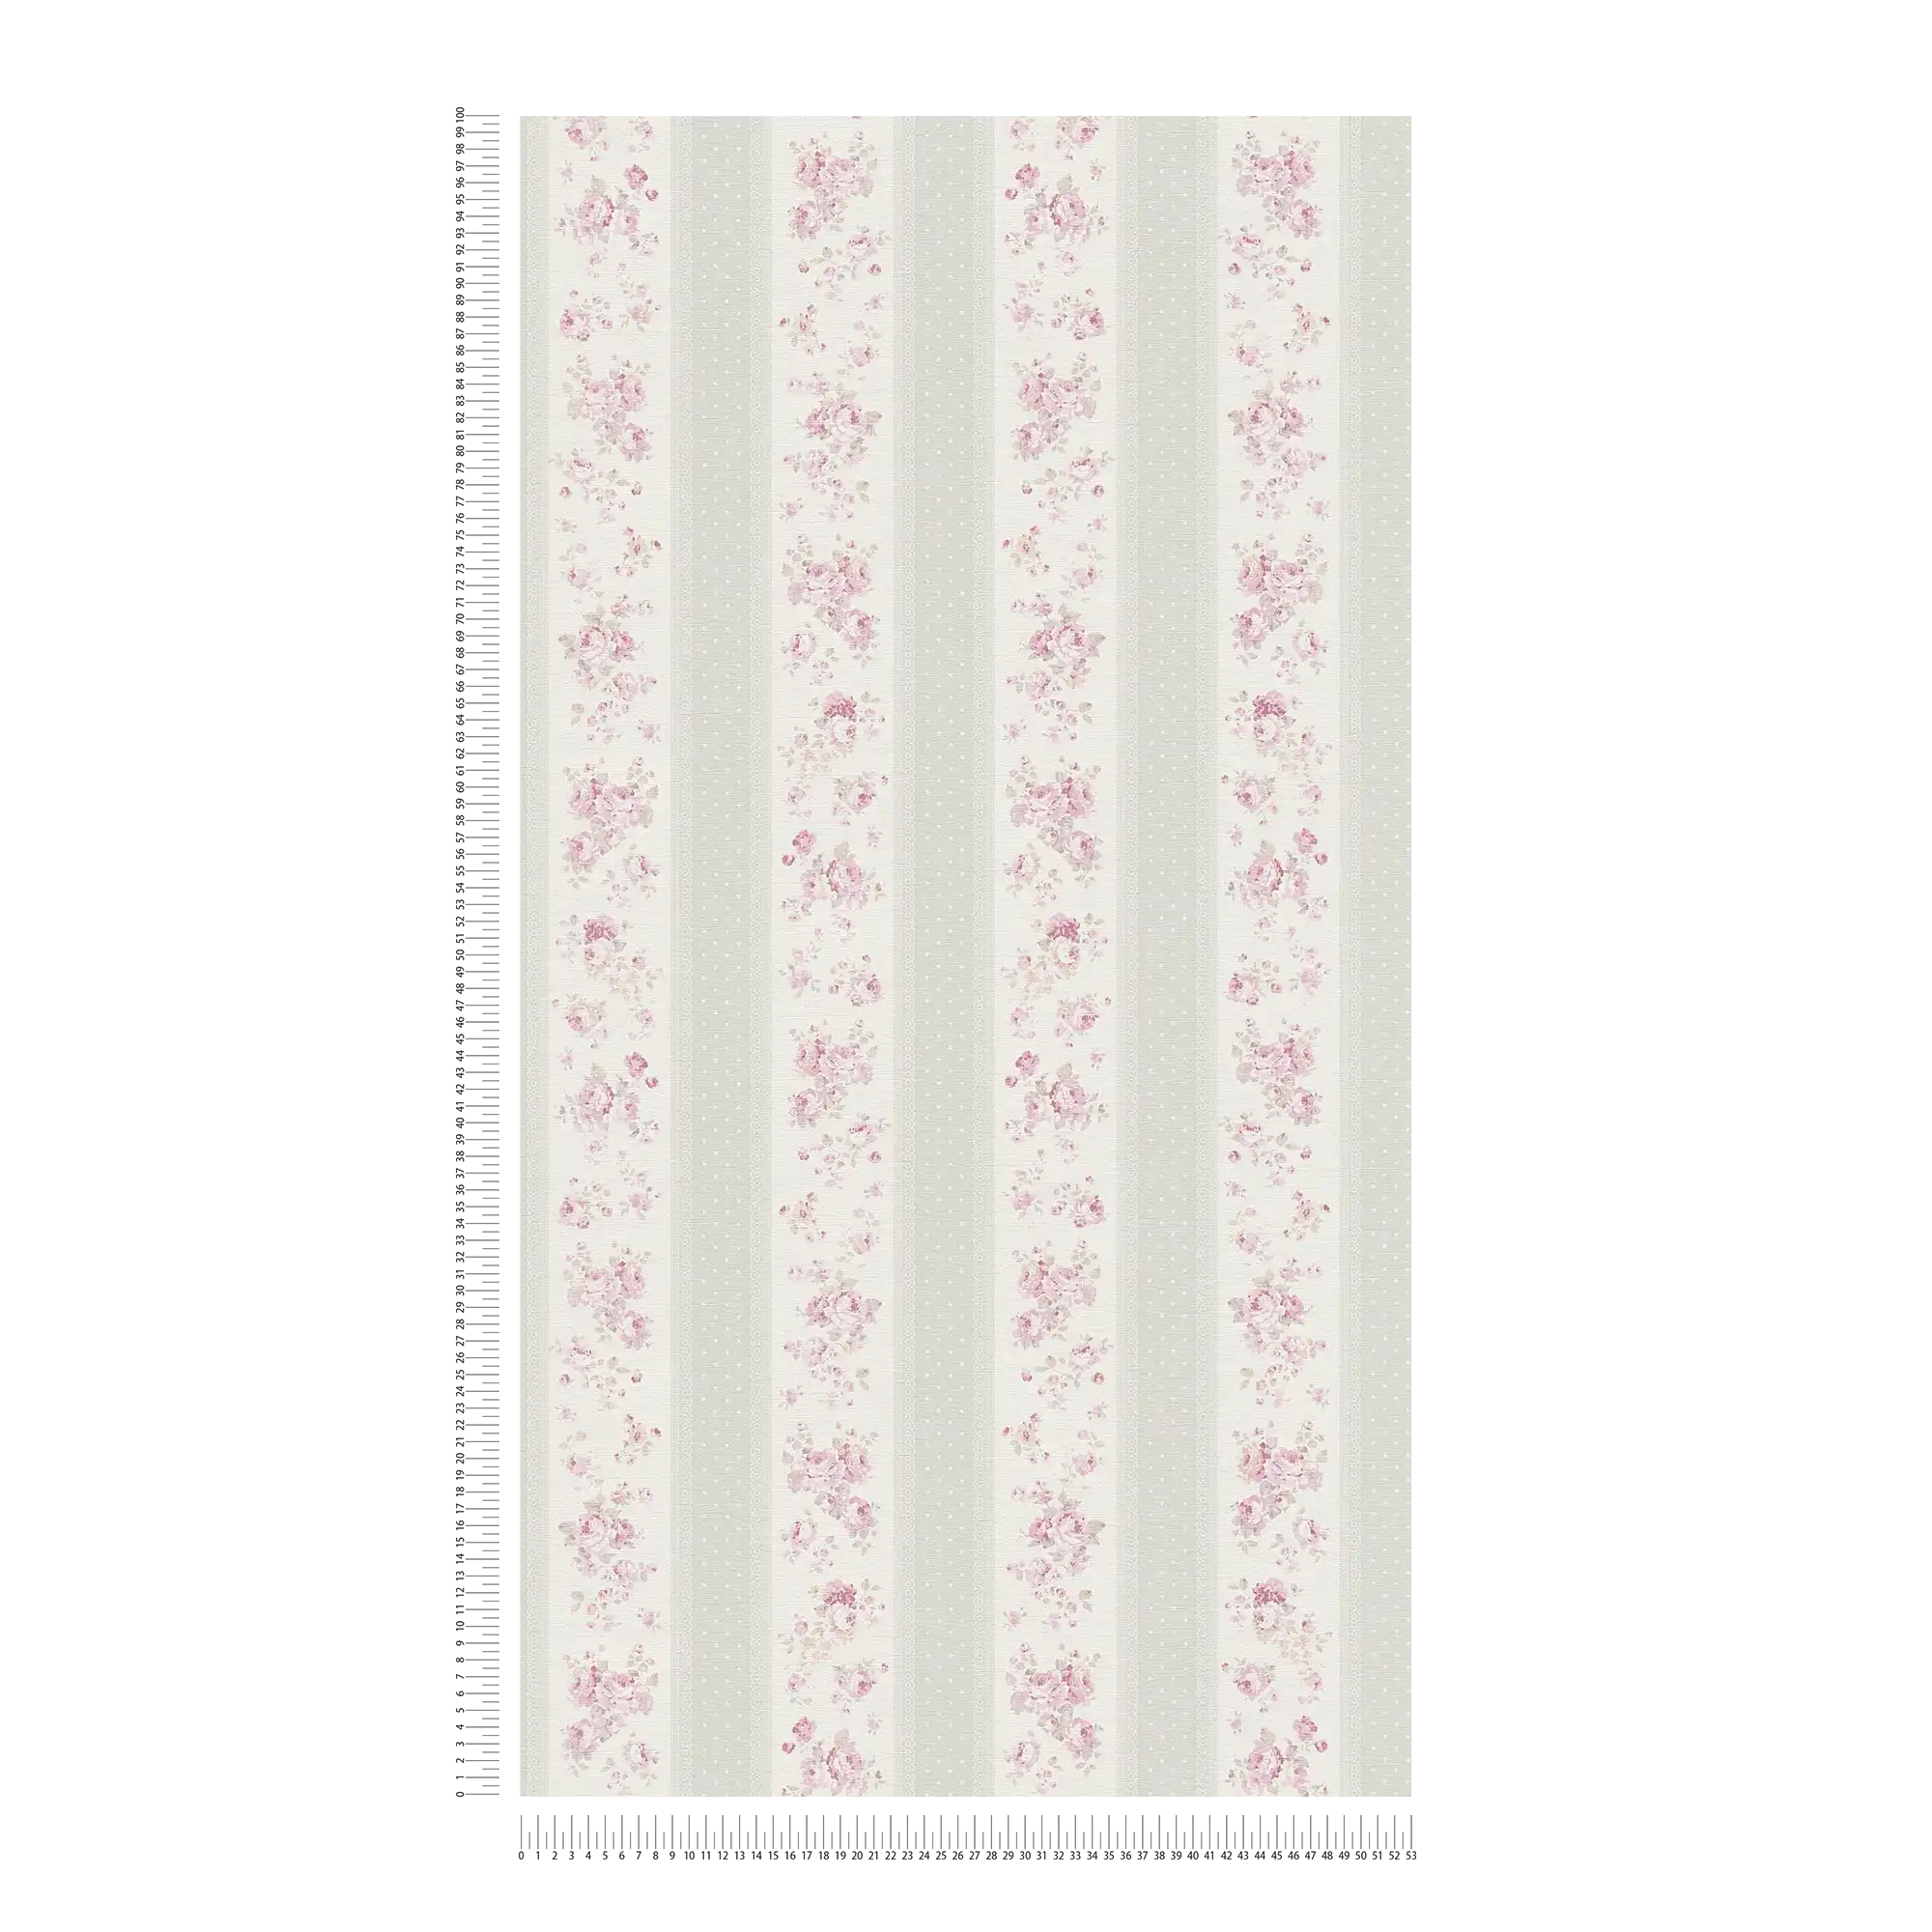             Papel pintado de rayas con flores y puntos - gris, blanco, rosa
        